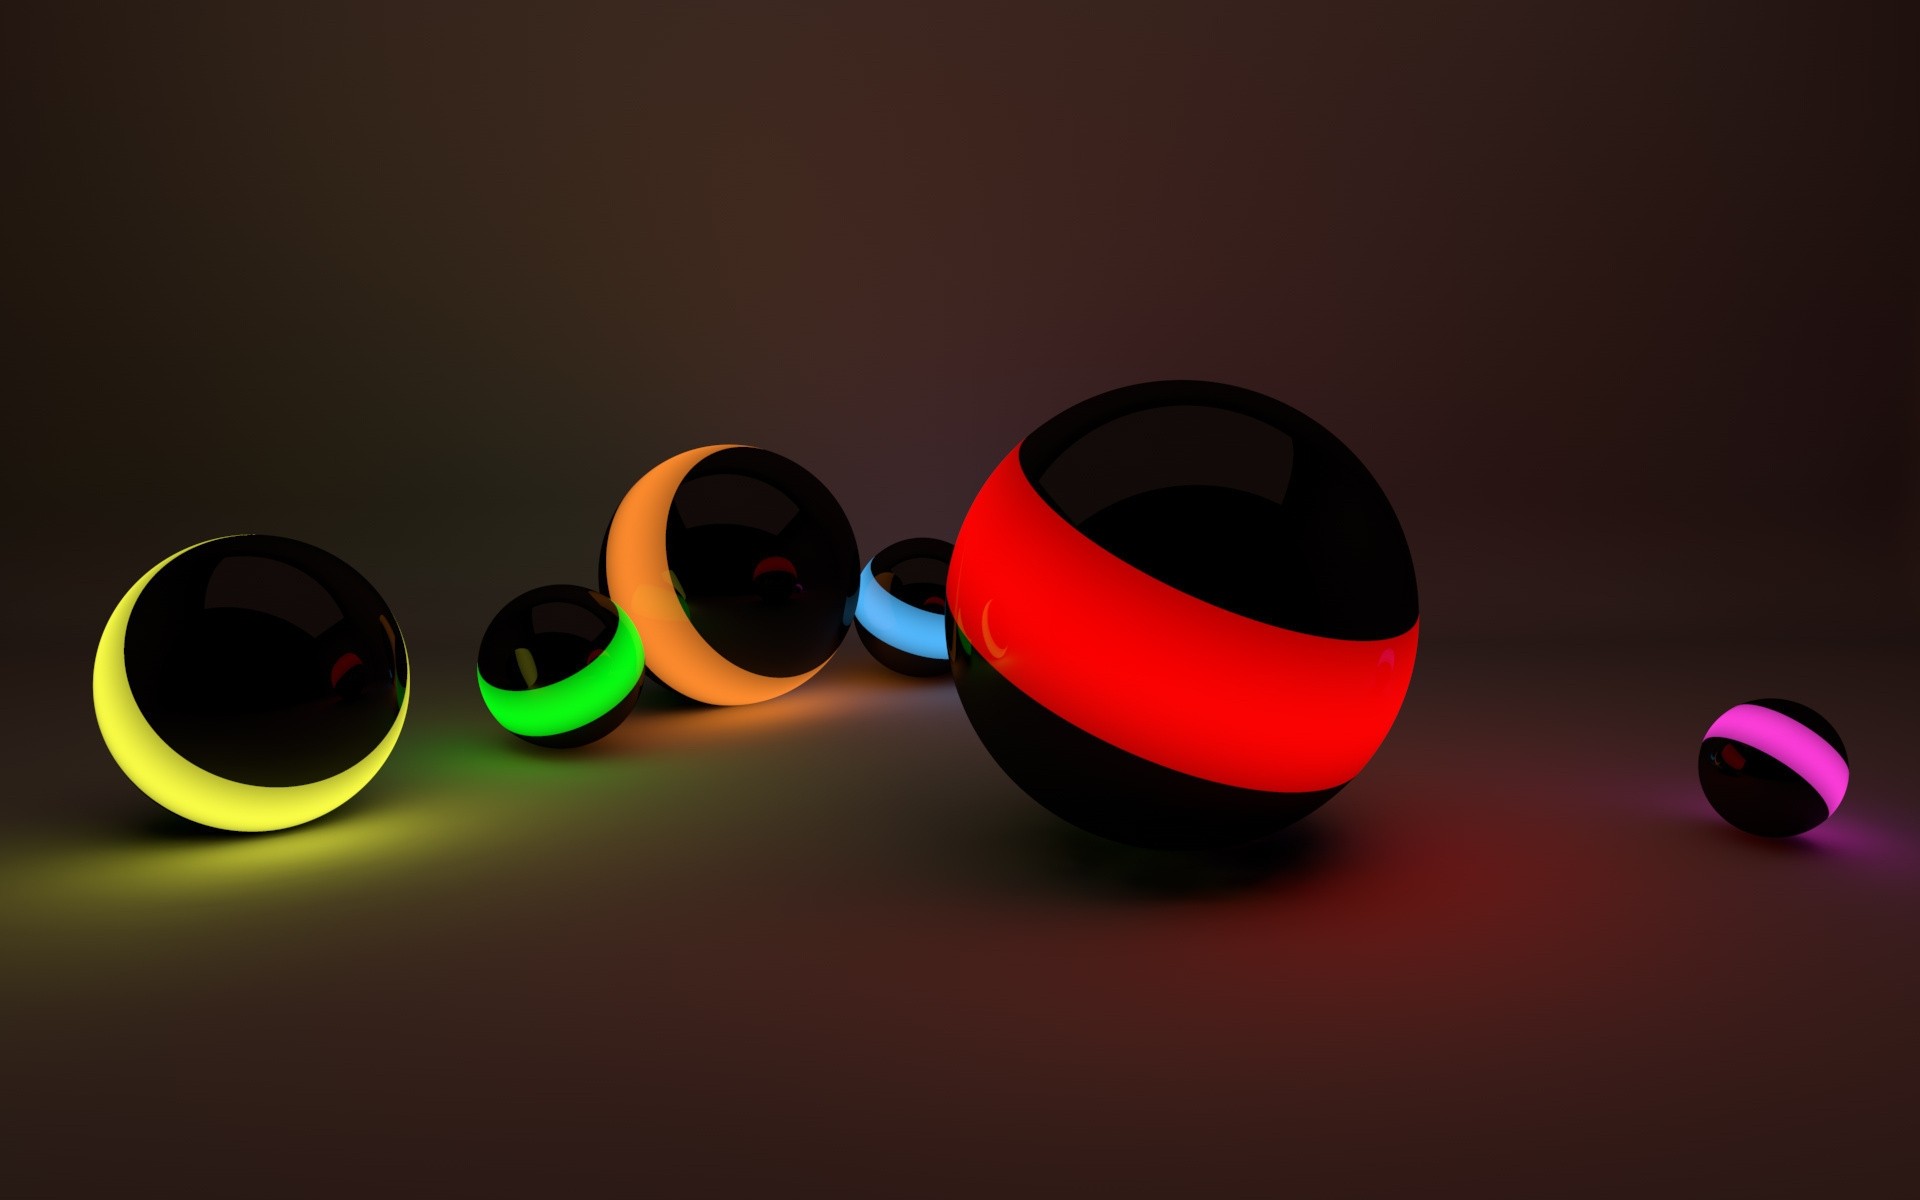 графика 3D шары свет graphics balls light бесплатно